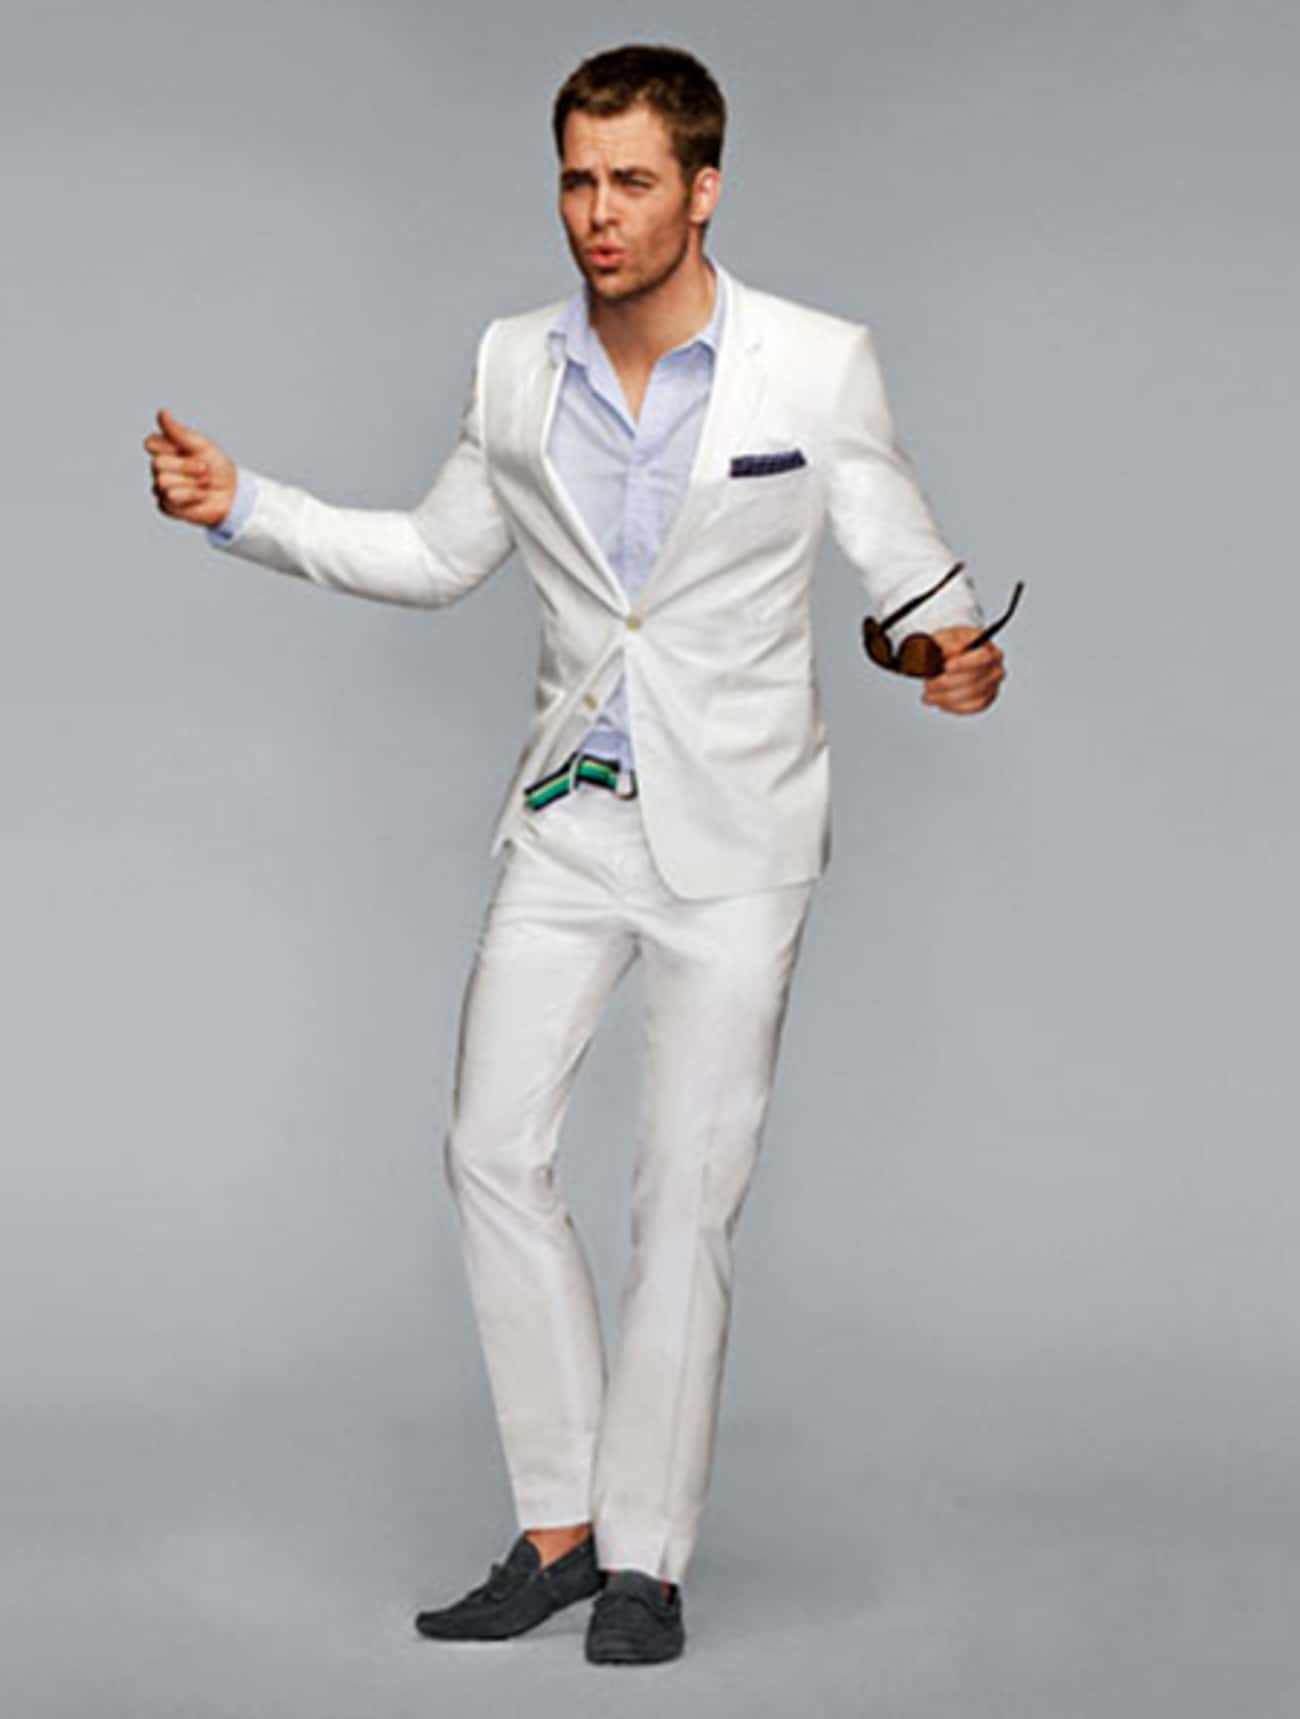 Chris Pine in White Double Button Tuxedo